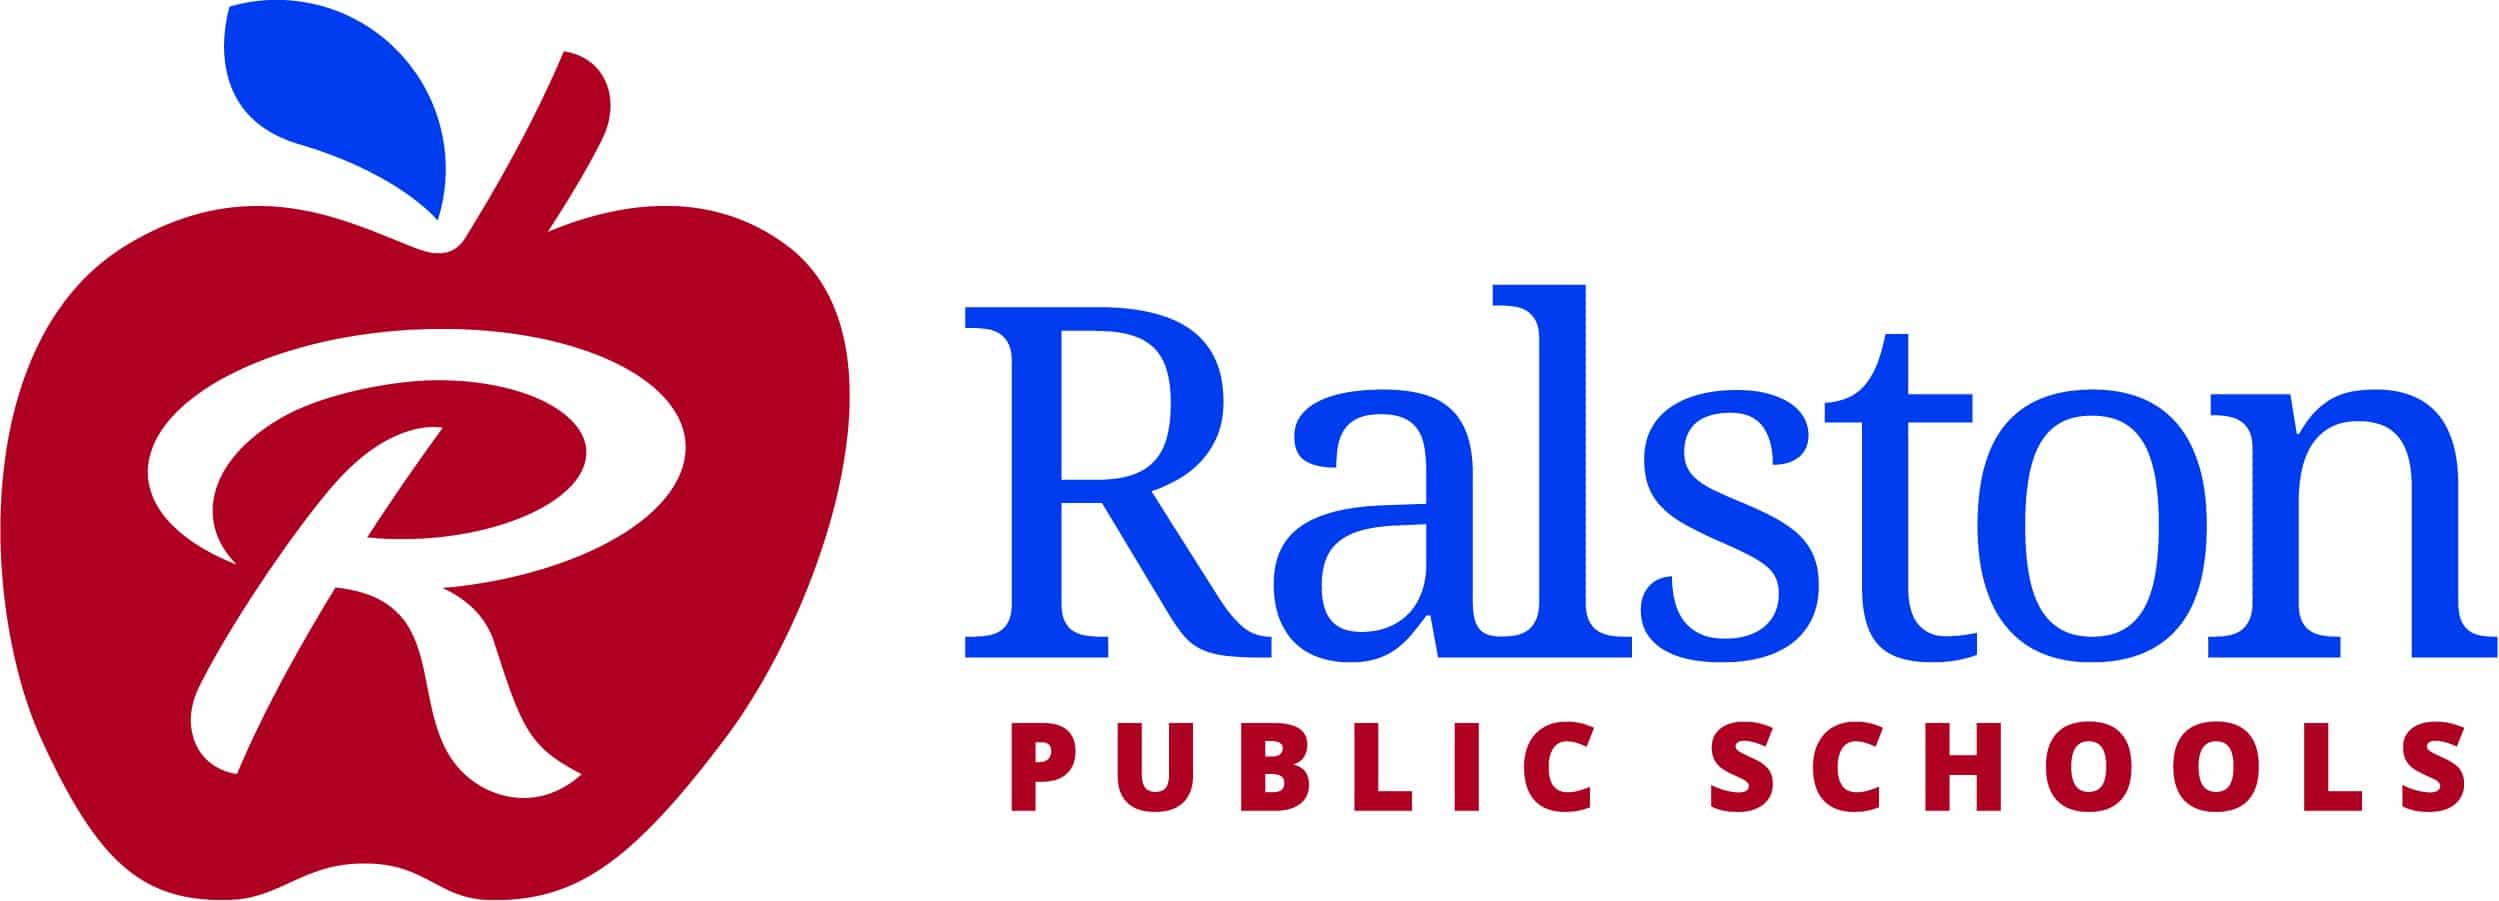 Ralston Public Schools